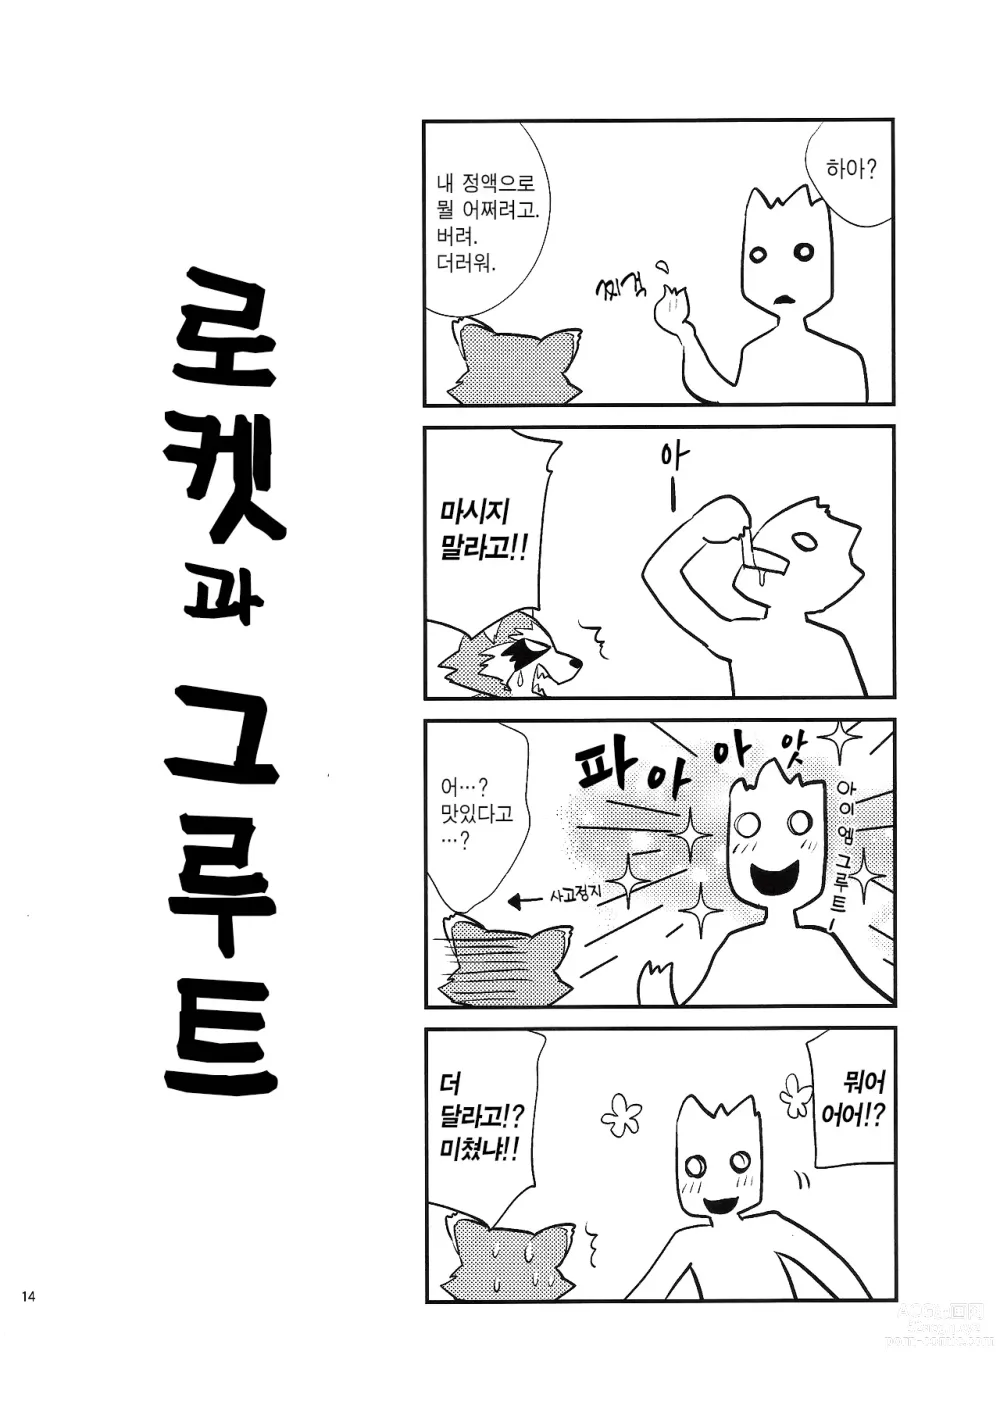 Page 13 of doujinshi 로켓 스타트!